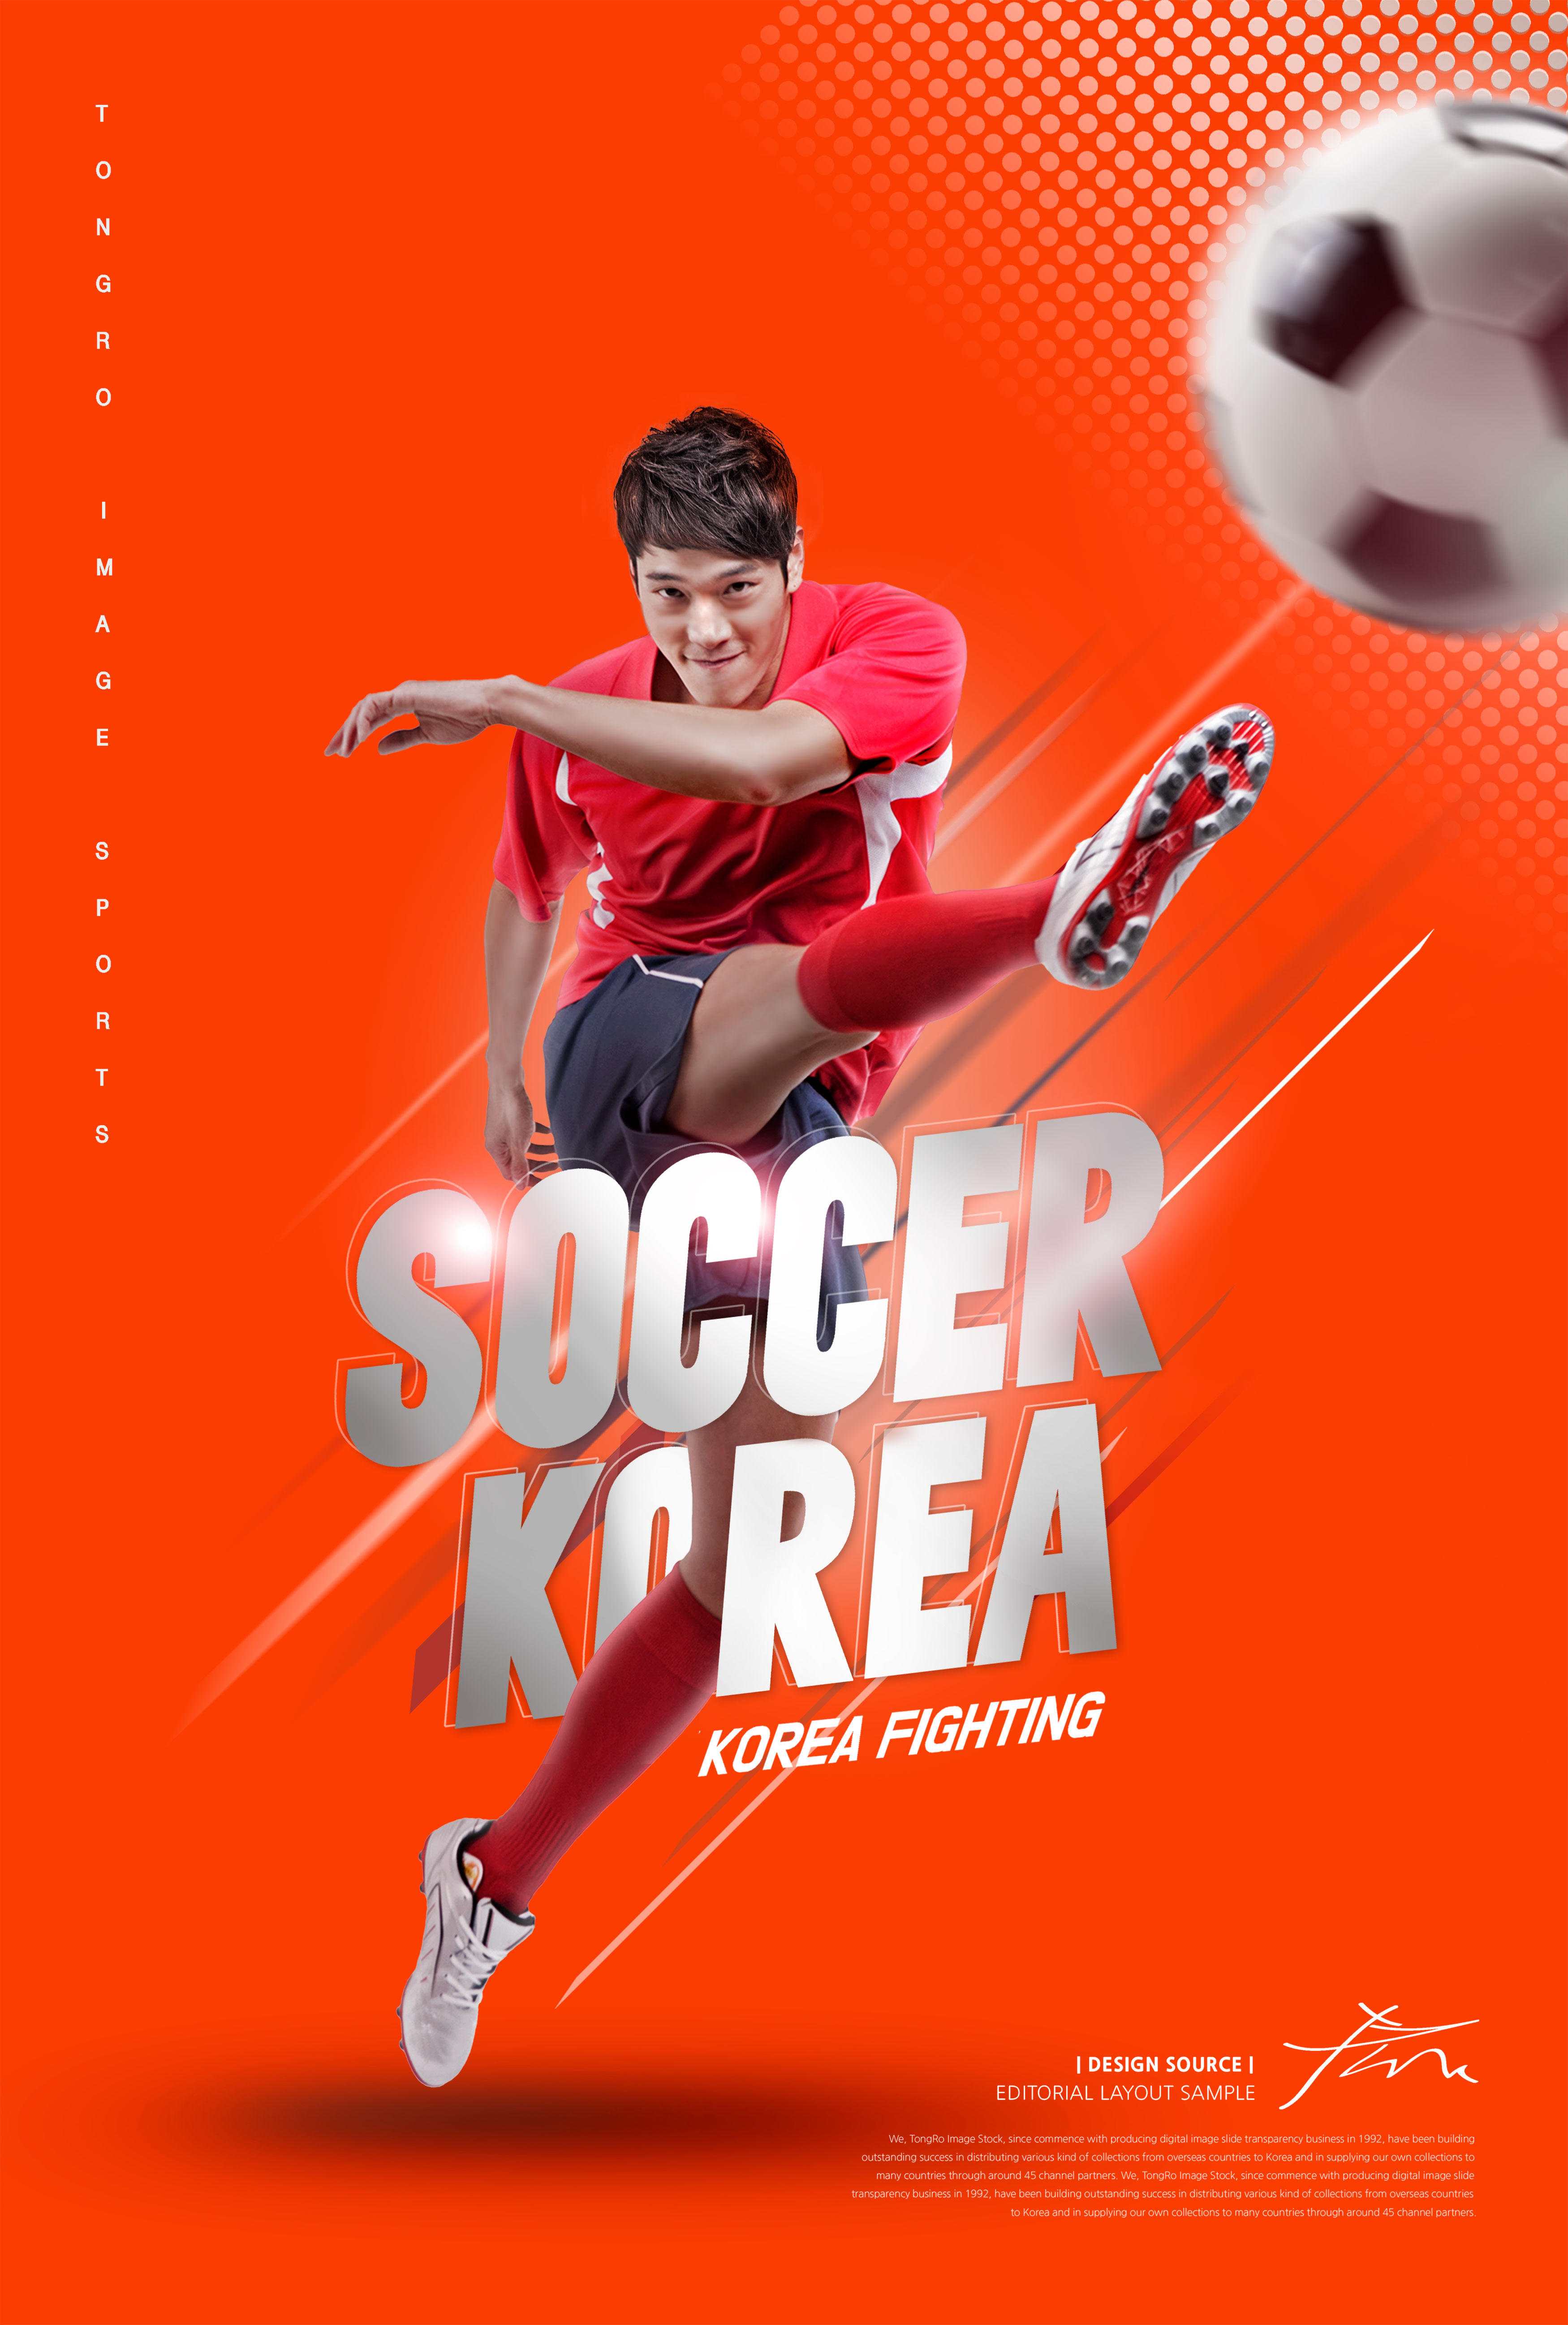 足球体育运动比赛海报PSD素材16设计网精选psd模板插图